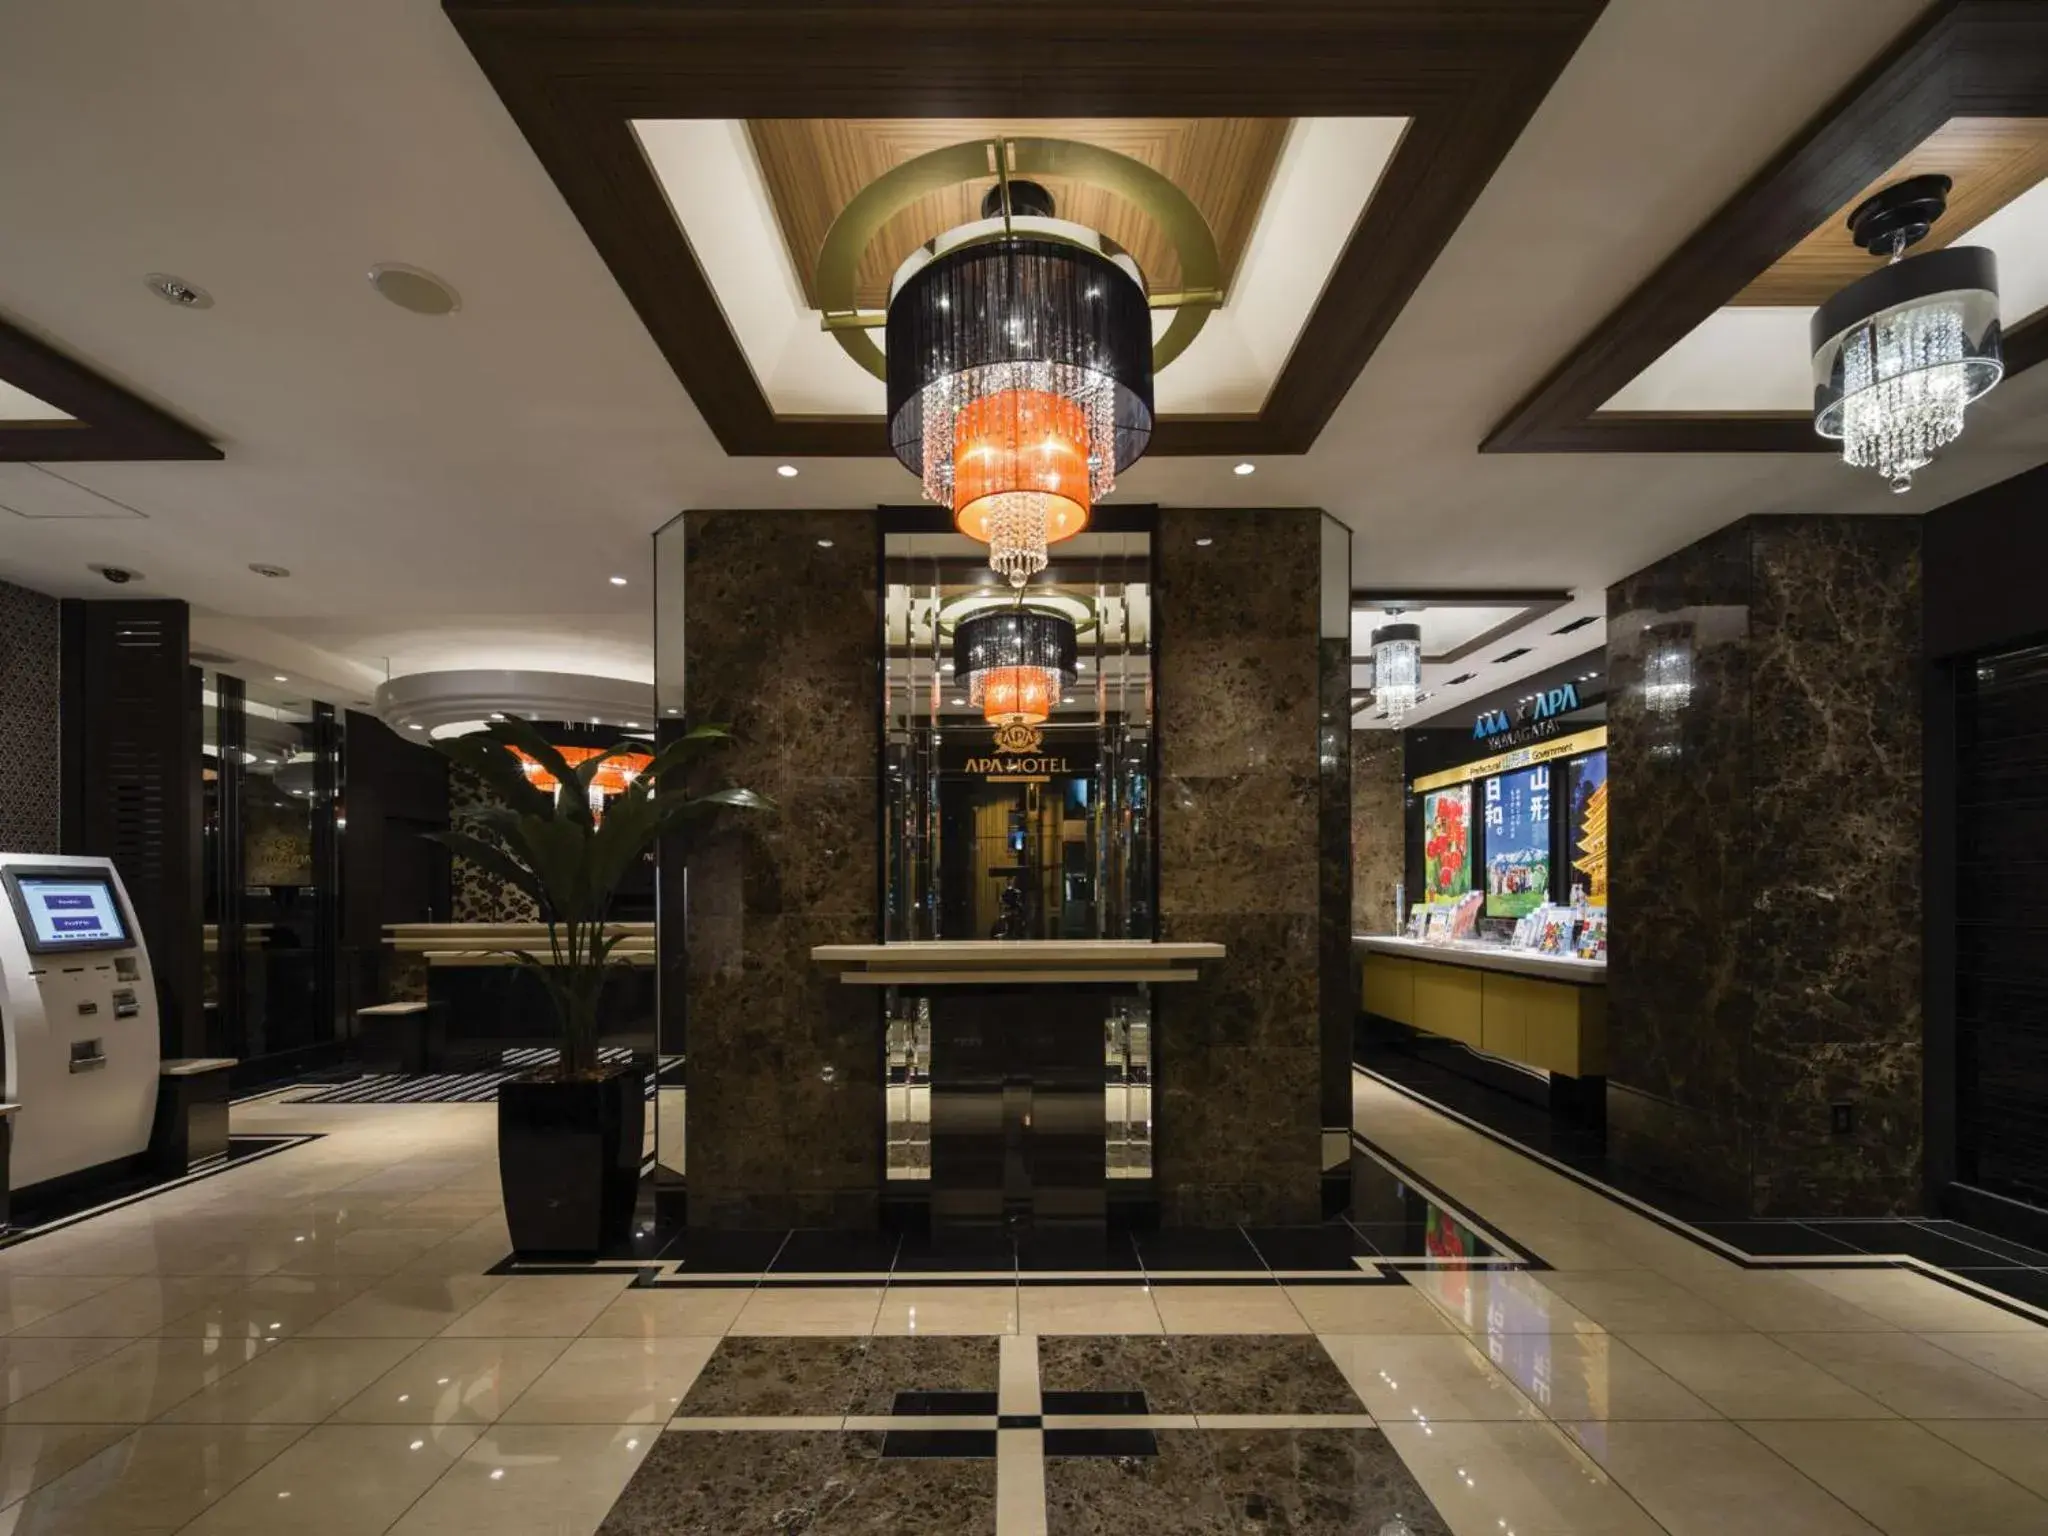 Lobby or reception in APA Hotel Hanzomon Hirakawacho